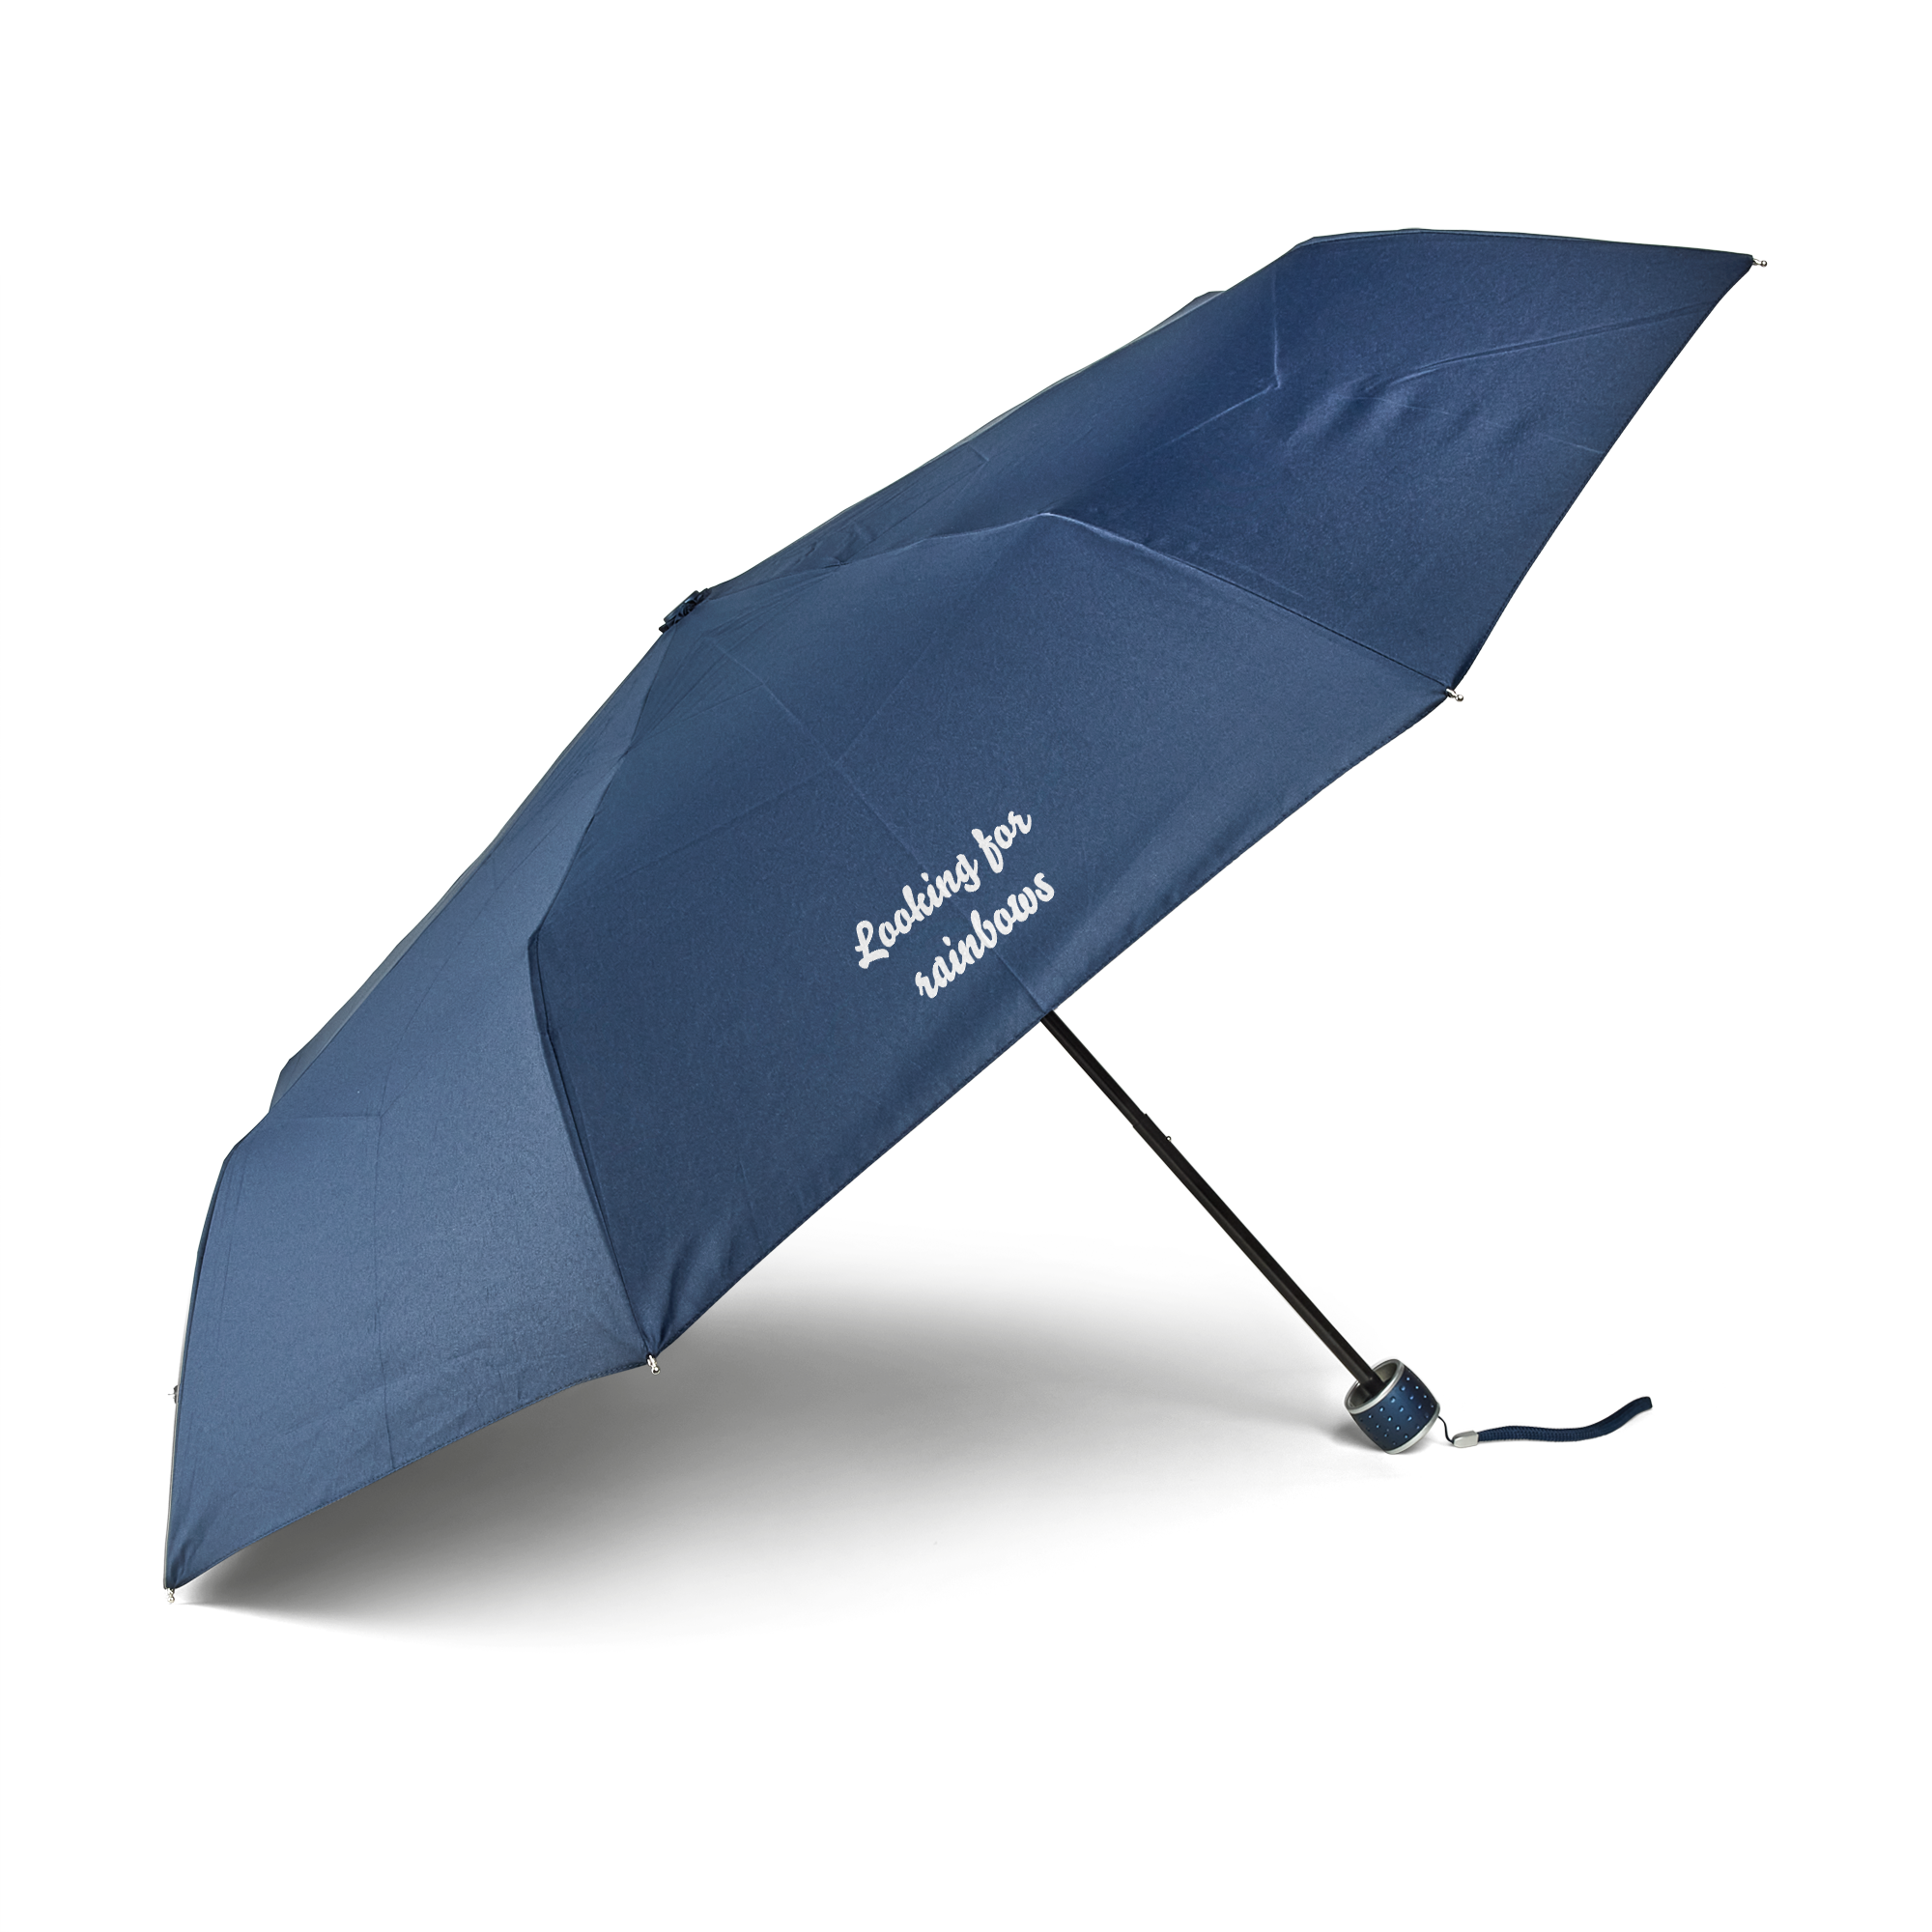 Parapluie de poche personnalisé - Bleu marine